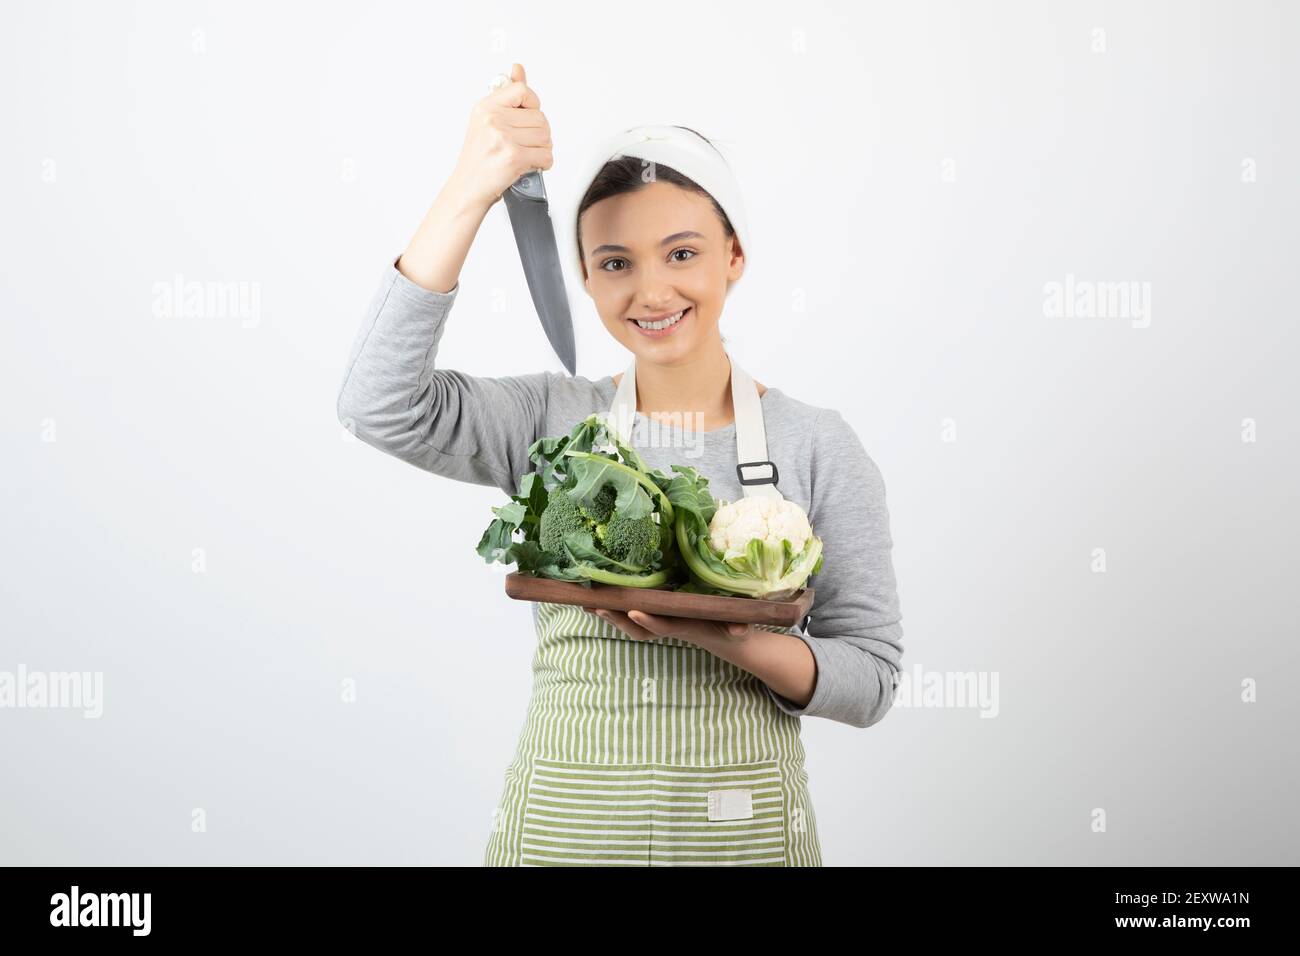 Immagine di una donna sorridente attraente che tiene un coltello con una piastra di legno Foto Stock